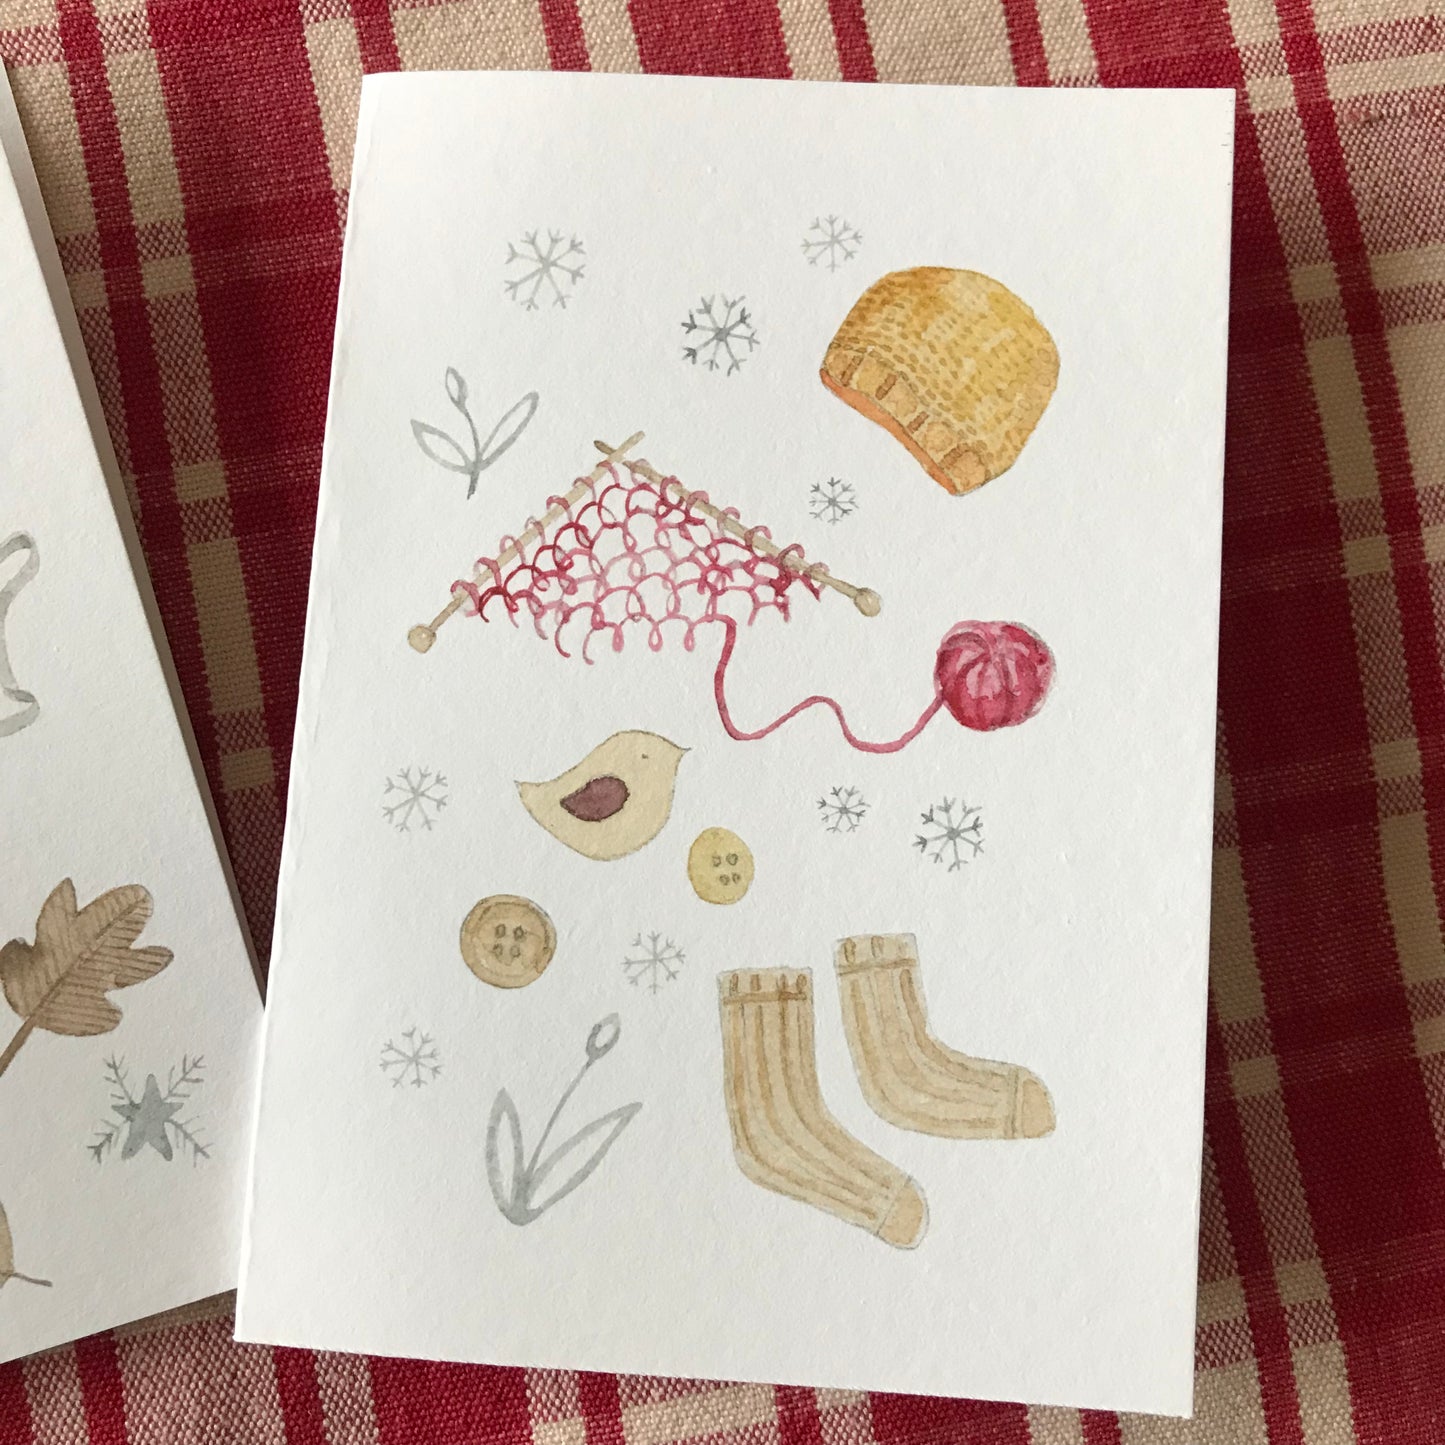 Deux carte de vœux aux couleurs de l'hiver